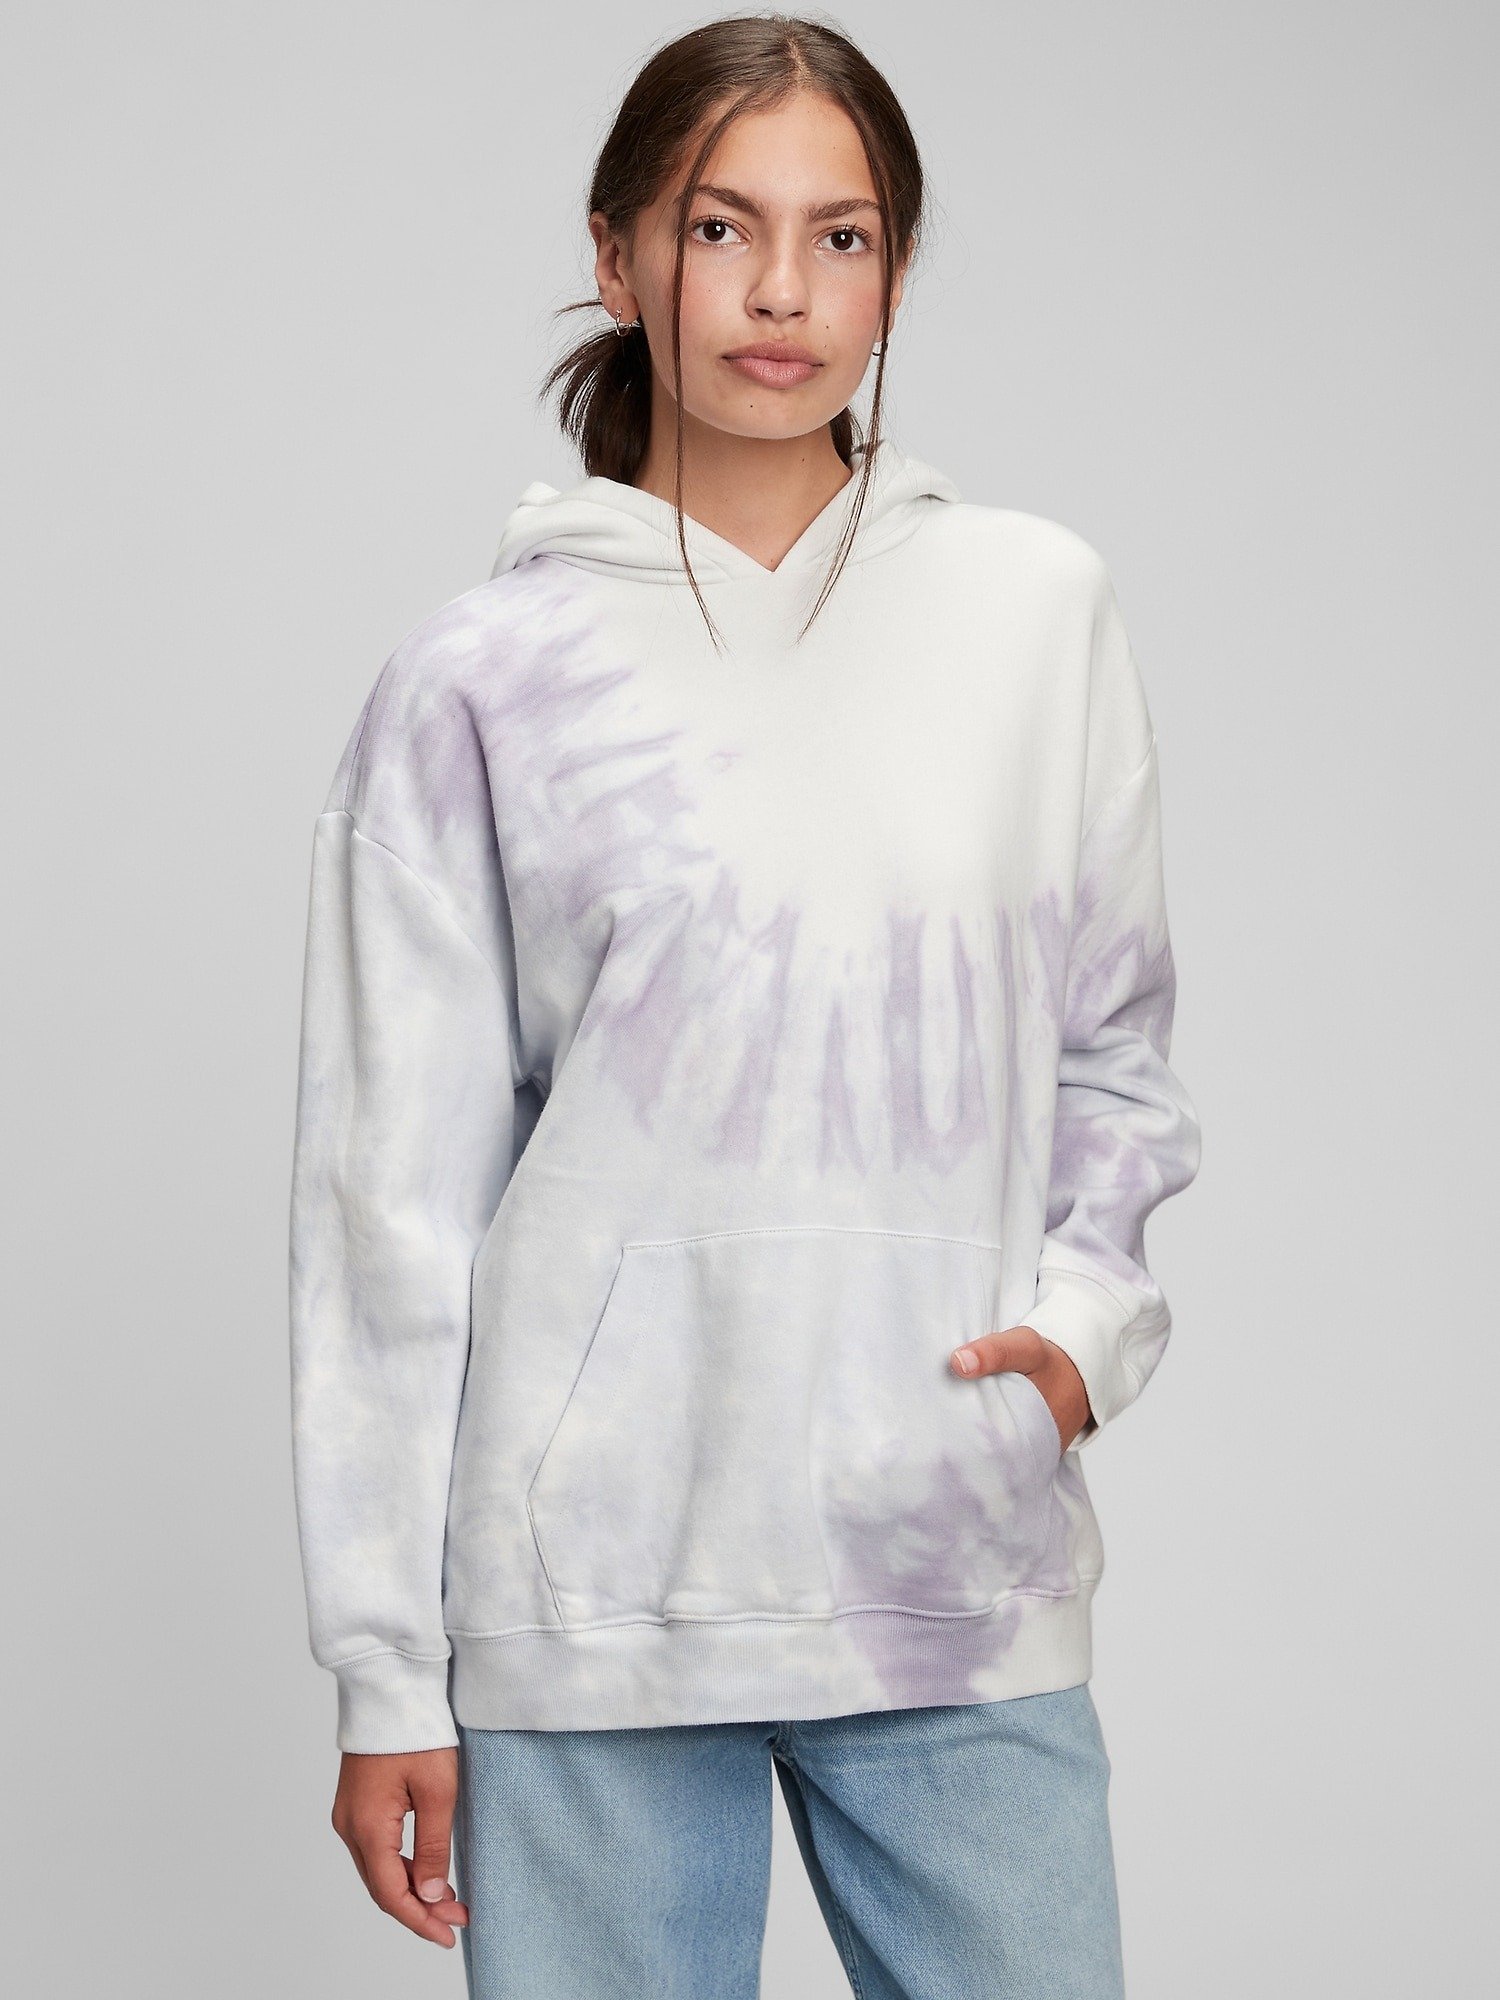 Oversized Sweatshirt product image